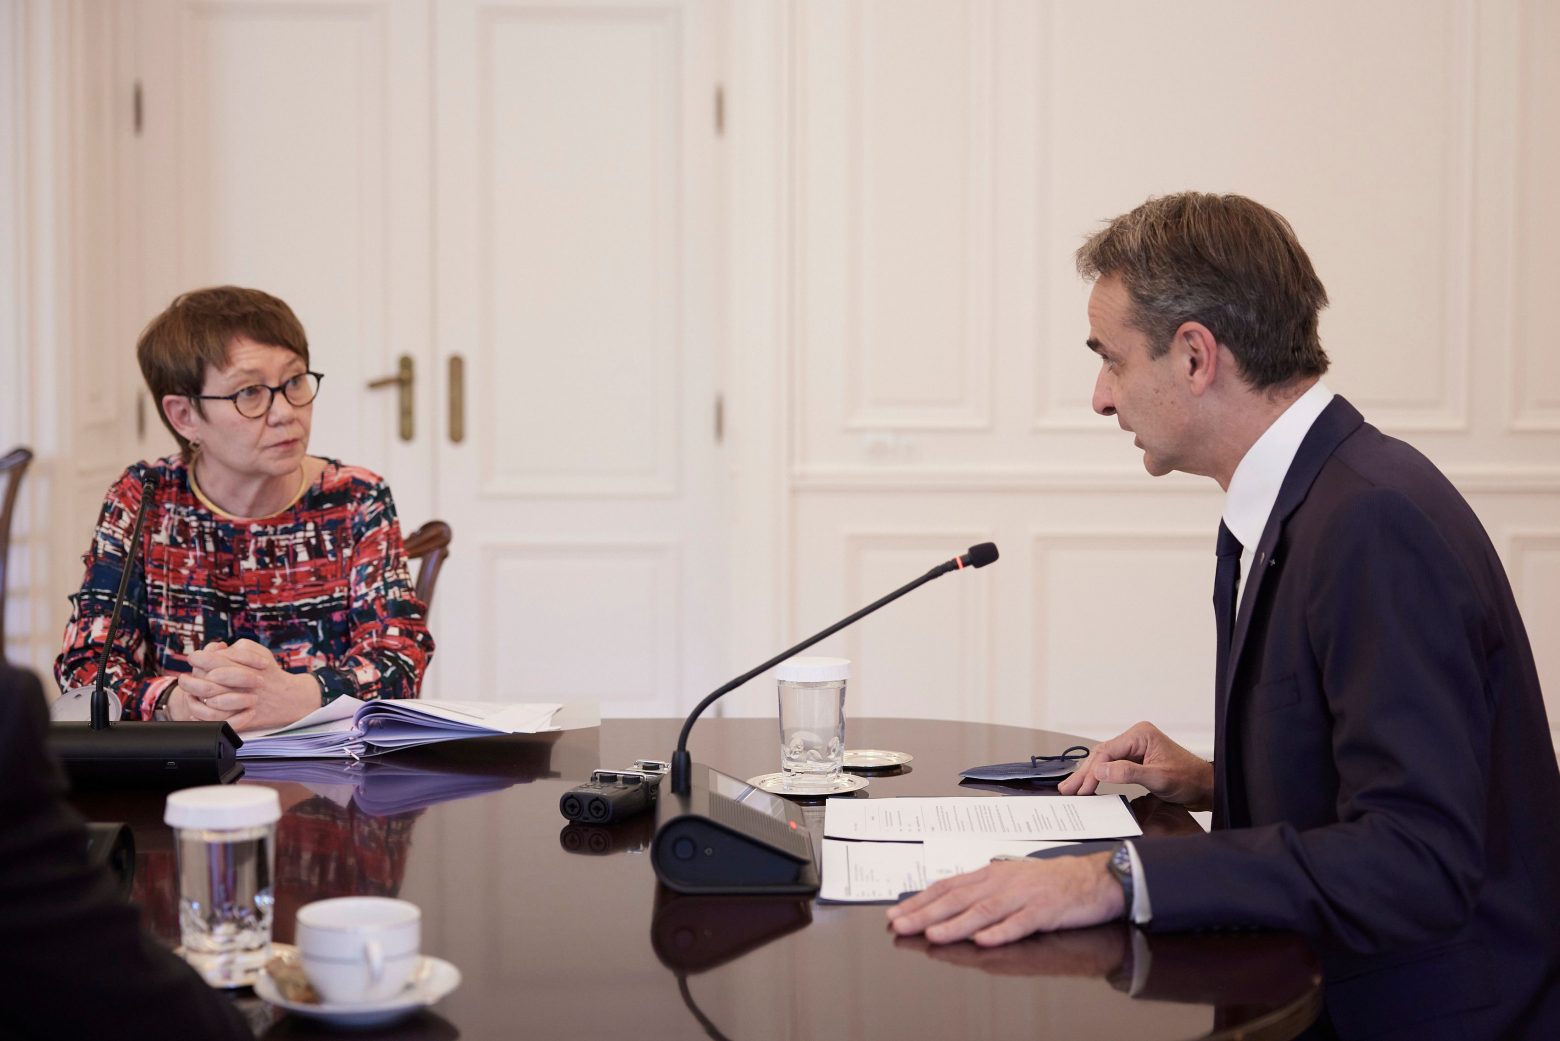 Συνάντηση Μητσοτάκη με την πρόεδρο της Ευρωπαϊκής Τράπεζας Ανασυγκρότησης